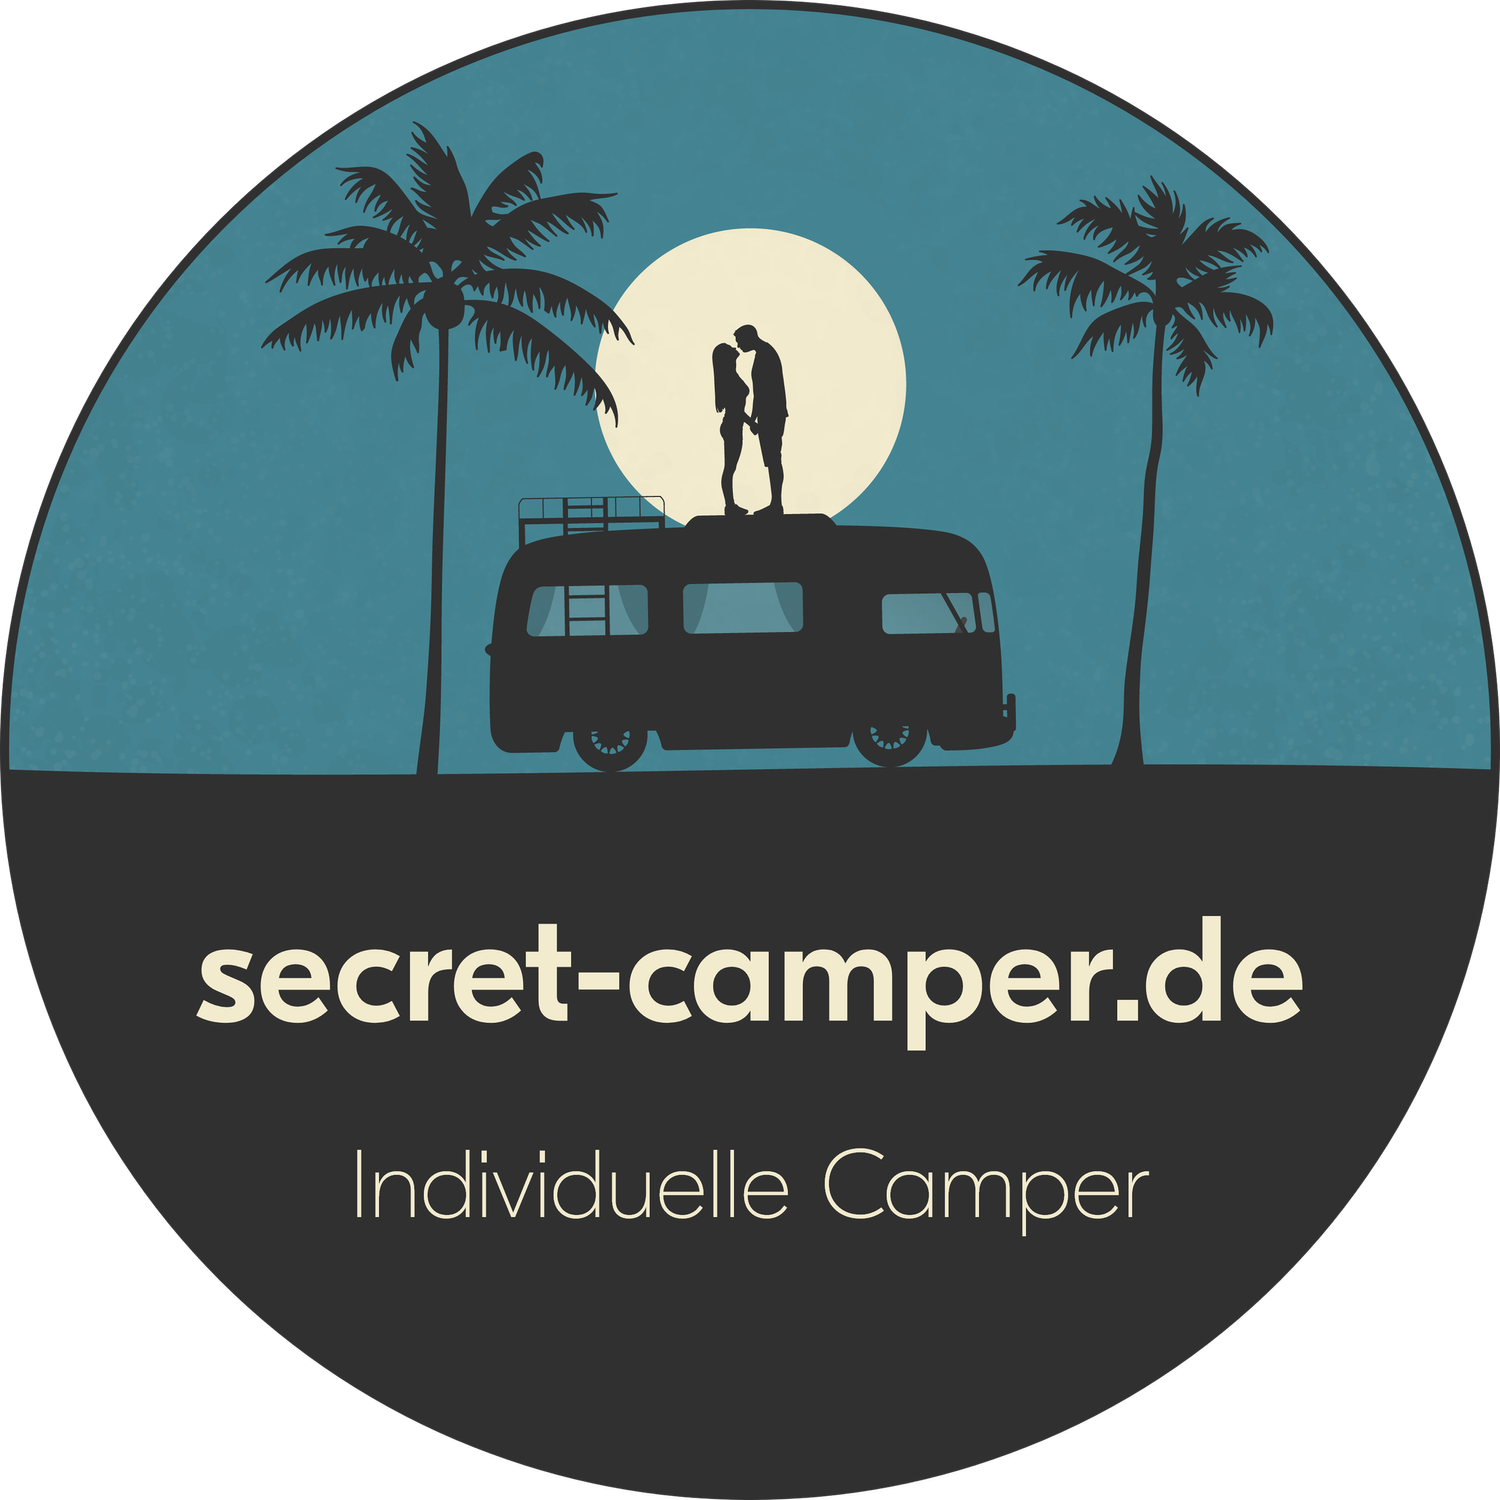 secret-camper.de